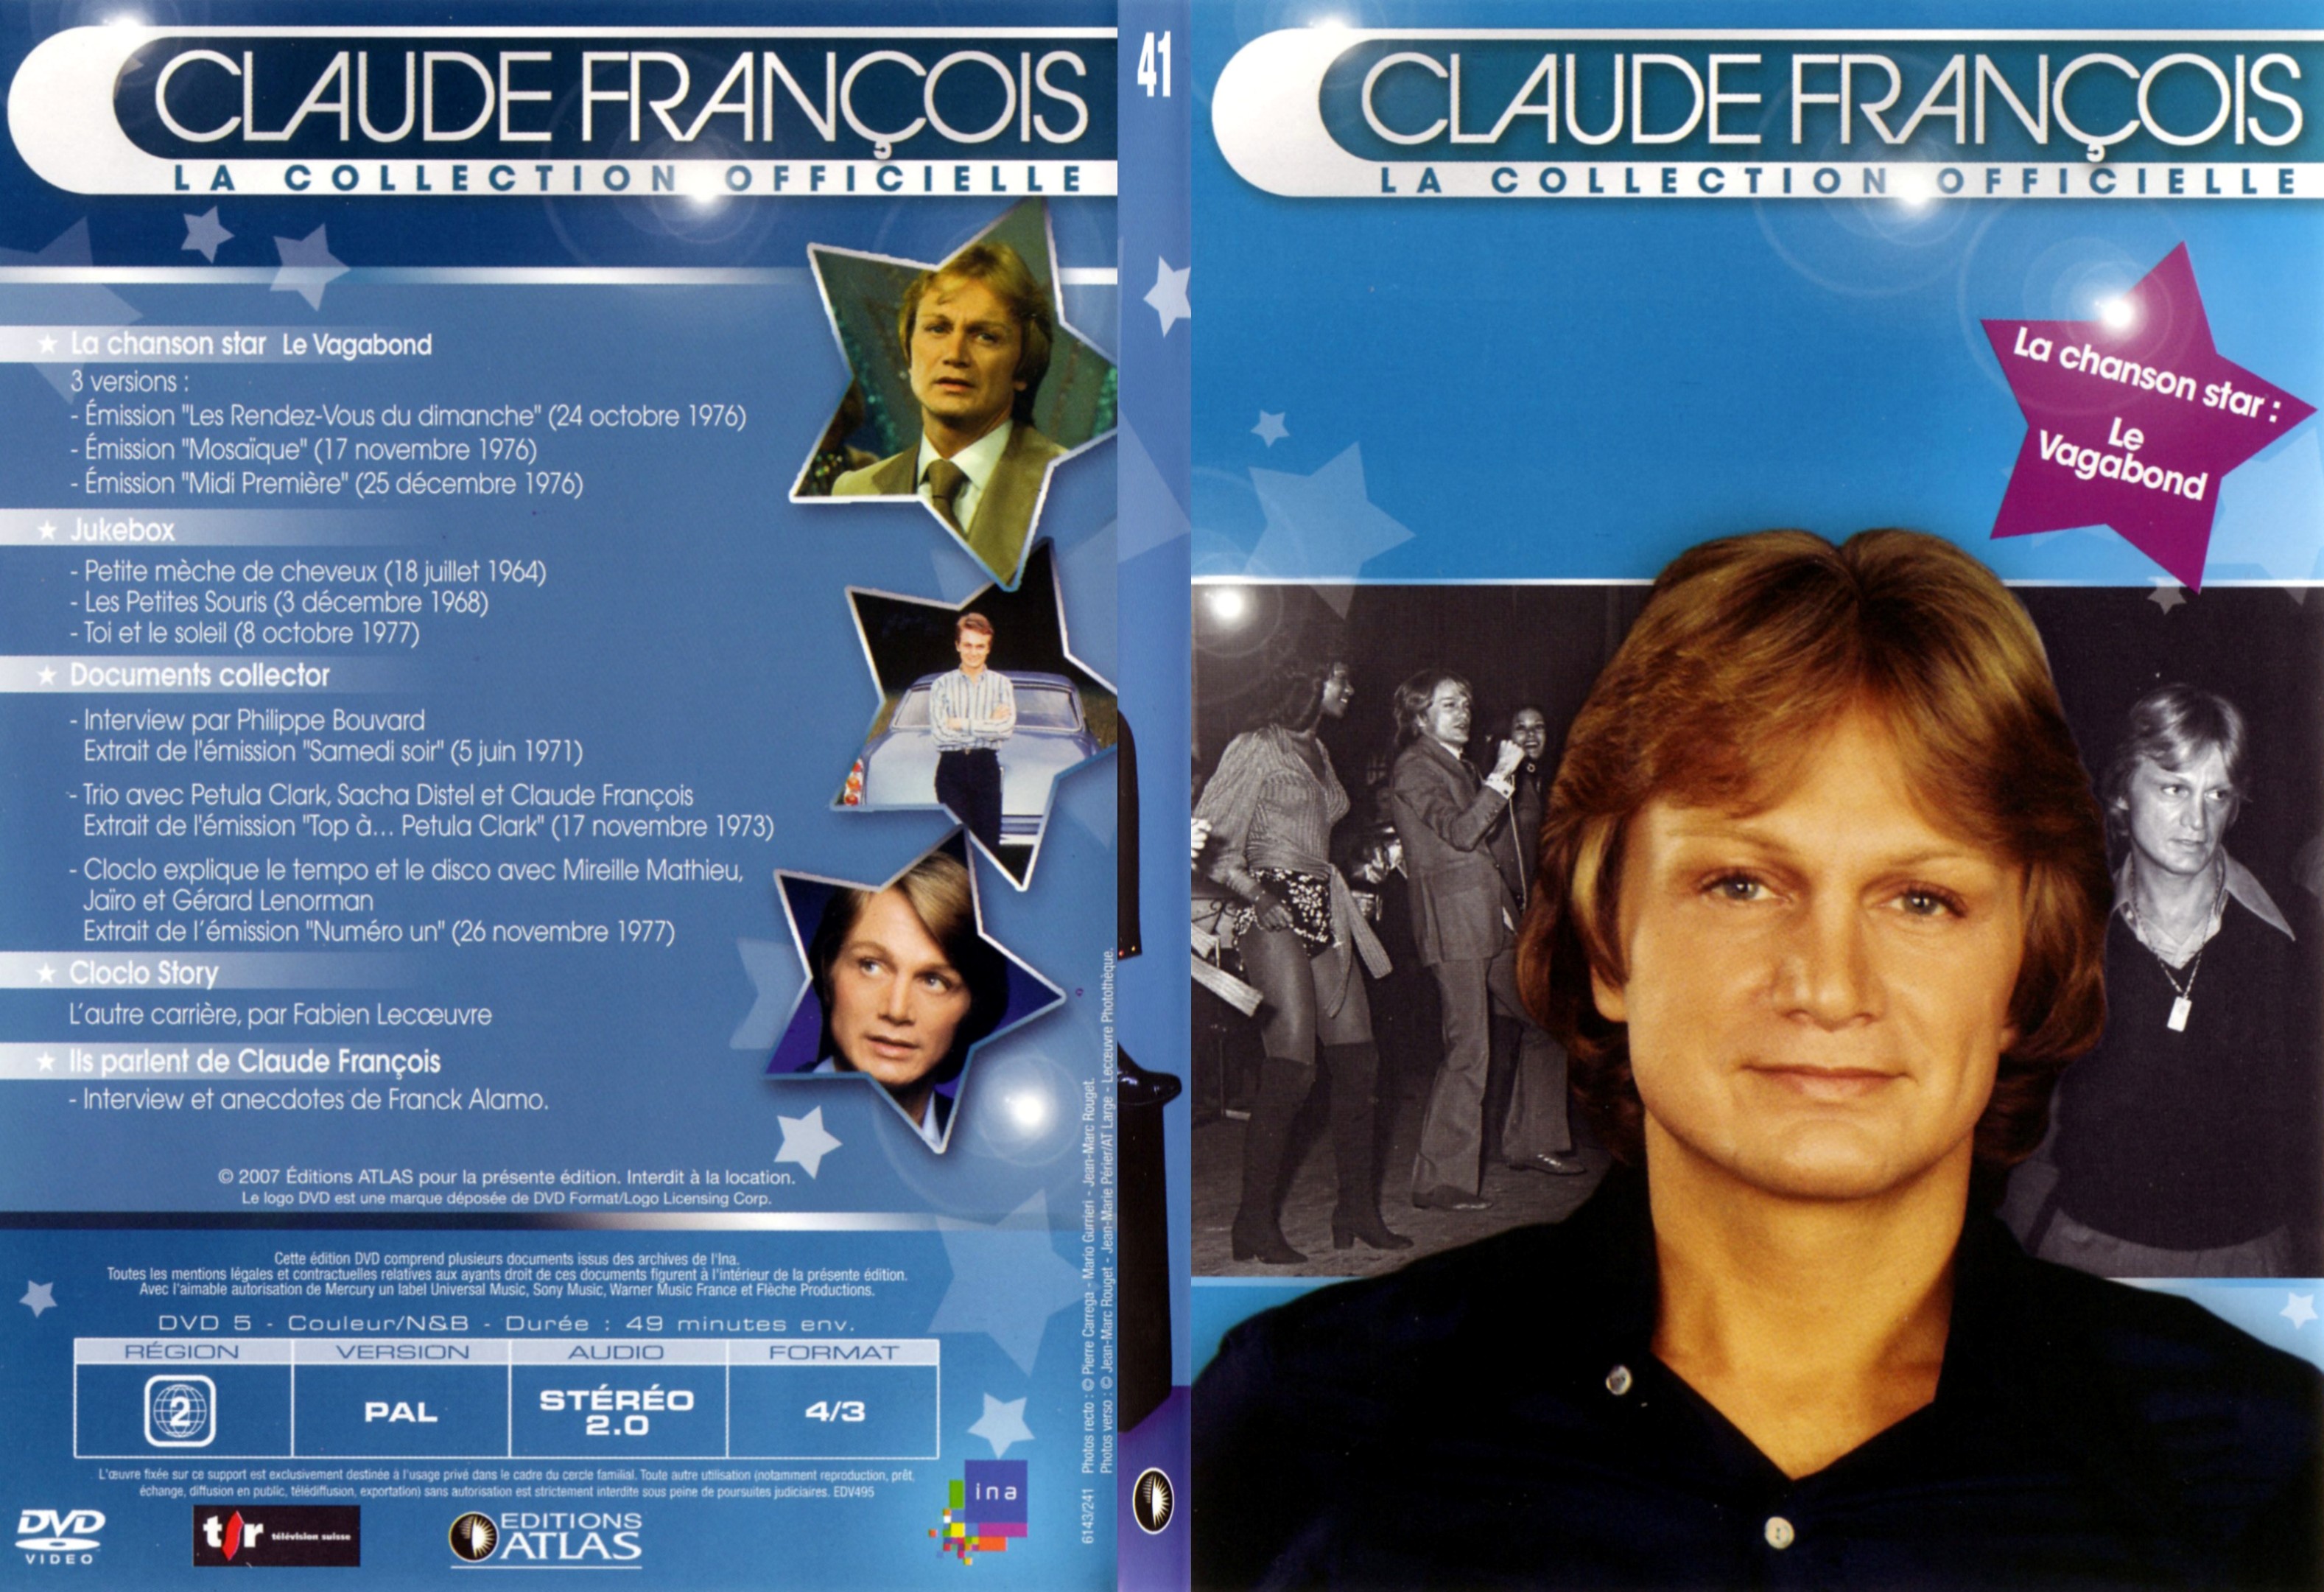 Jaquette DVD Claude francois le collection officielle vol 41 - SLIM